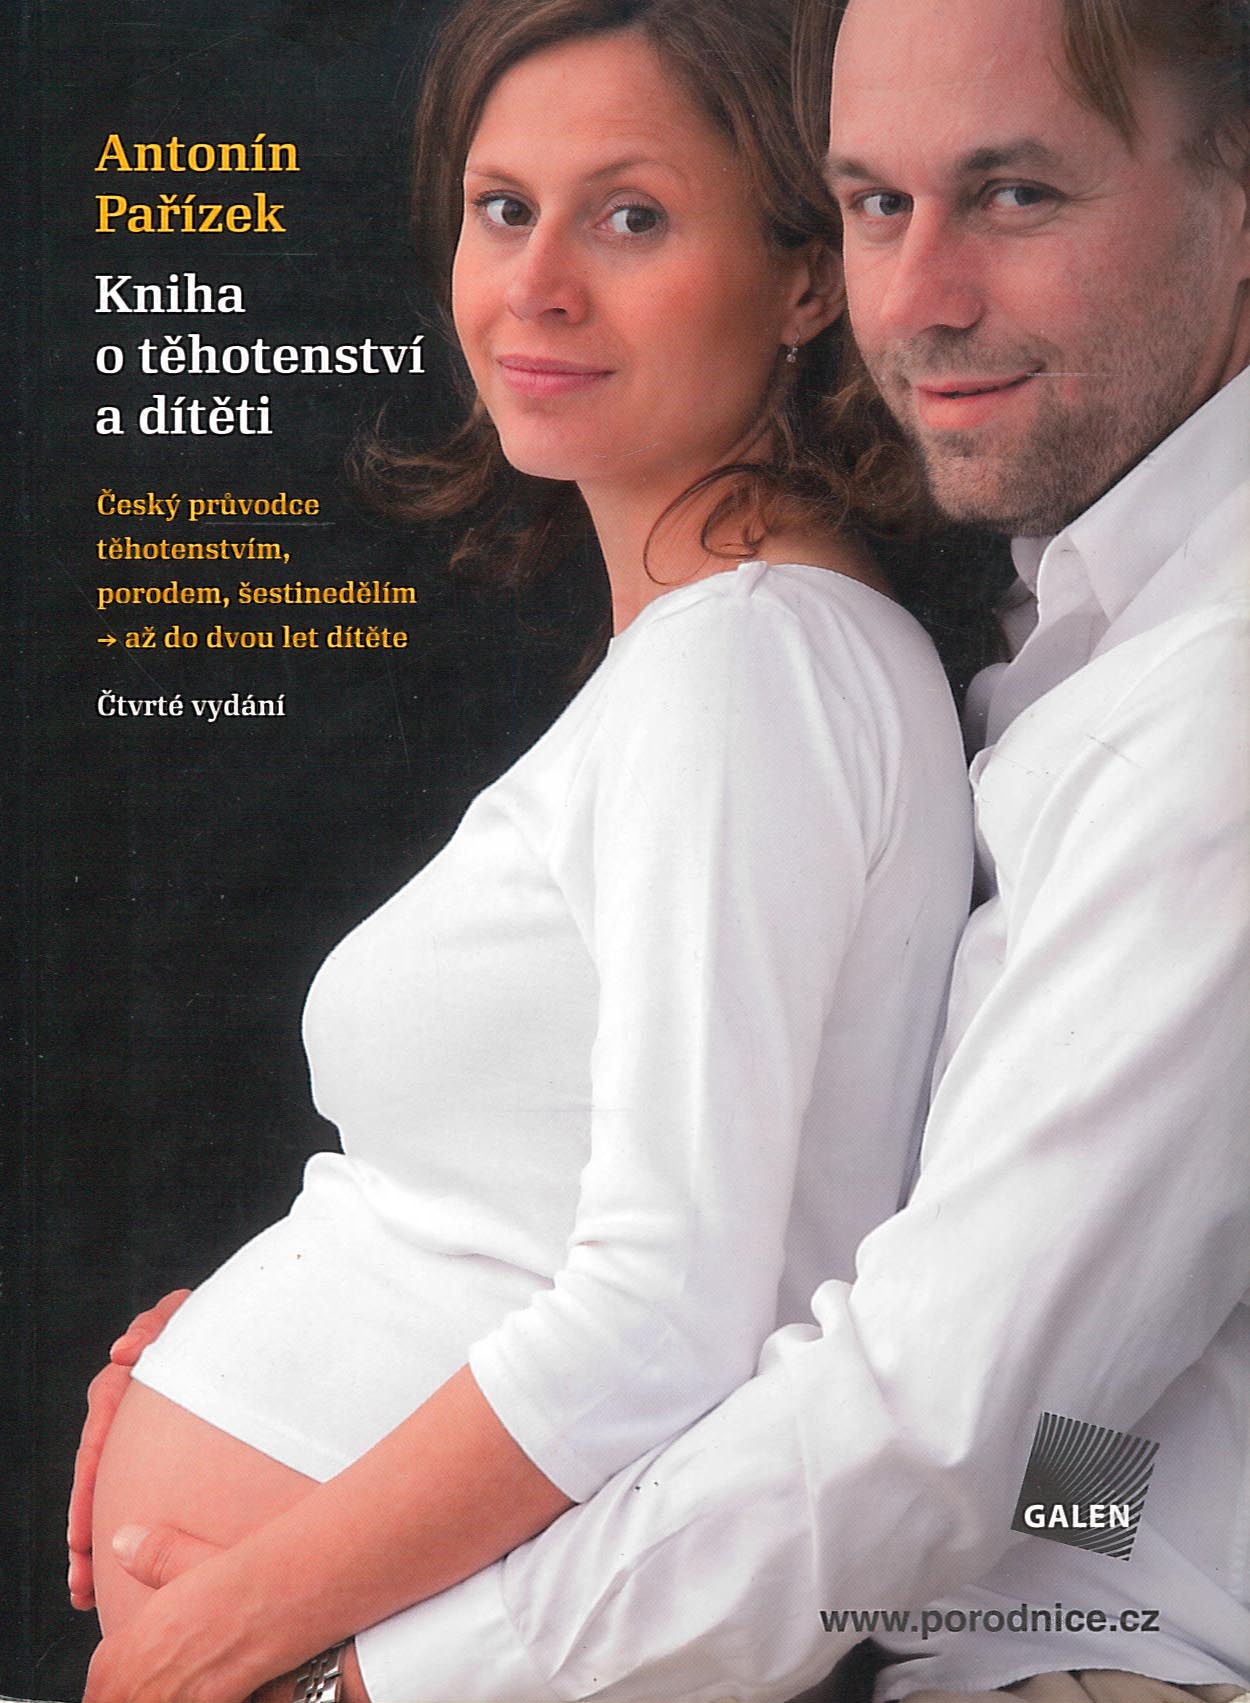 Kniha o těhotenství a dítěti (Antonín Pařízek)